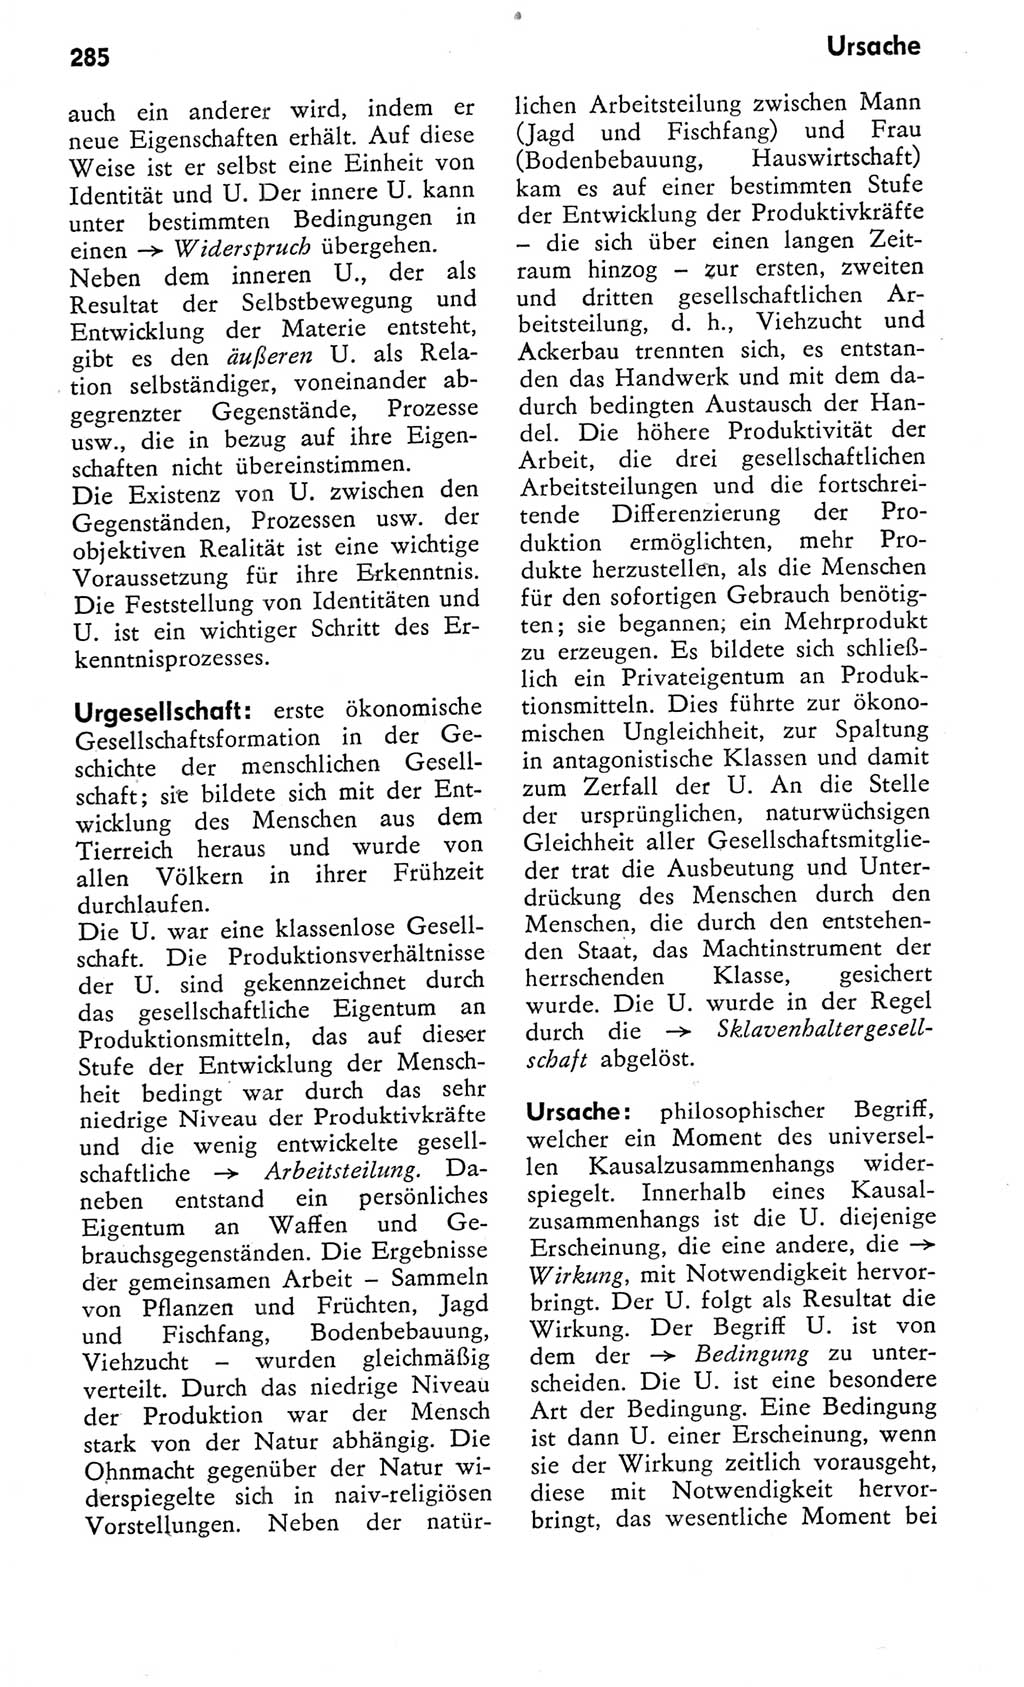 Kleines Wörterbuch der marxistisch-leninistischen Philosophie [Deutsche Demokratische Republik (DDR)] 1975, Seite 285 (Kl. Wb. ML Phil. DDR 1975, S. 285)